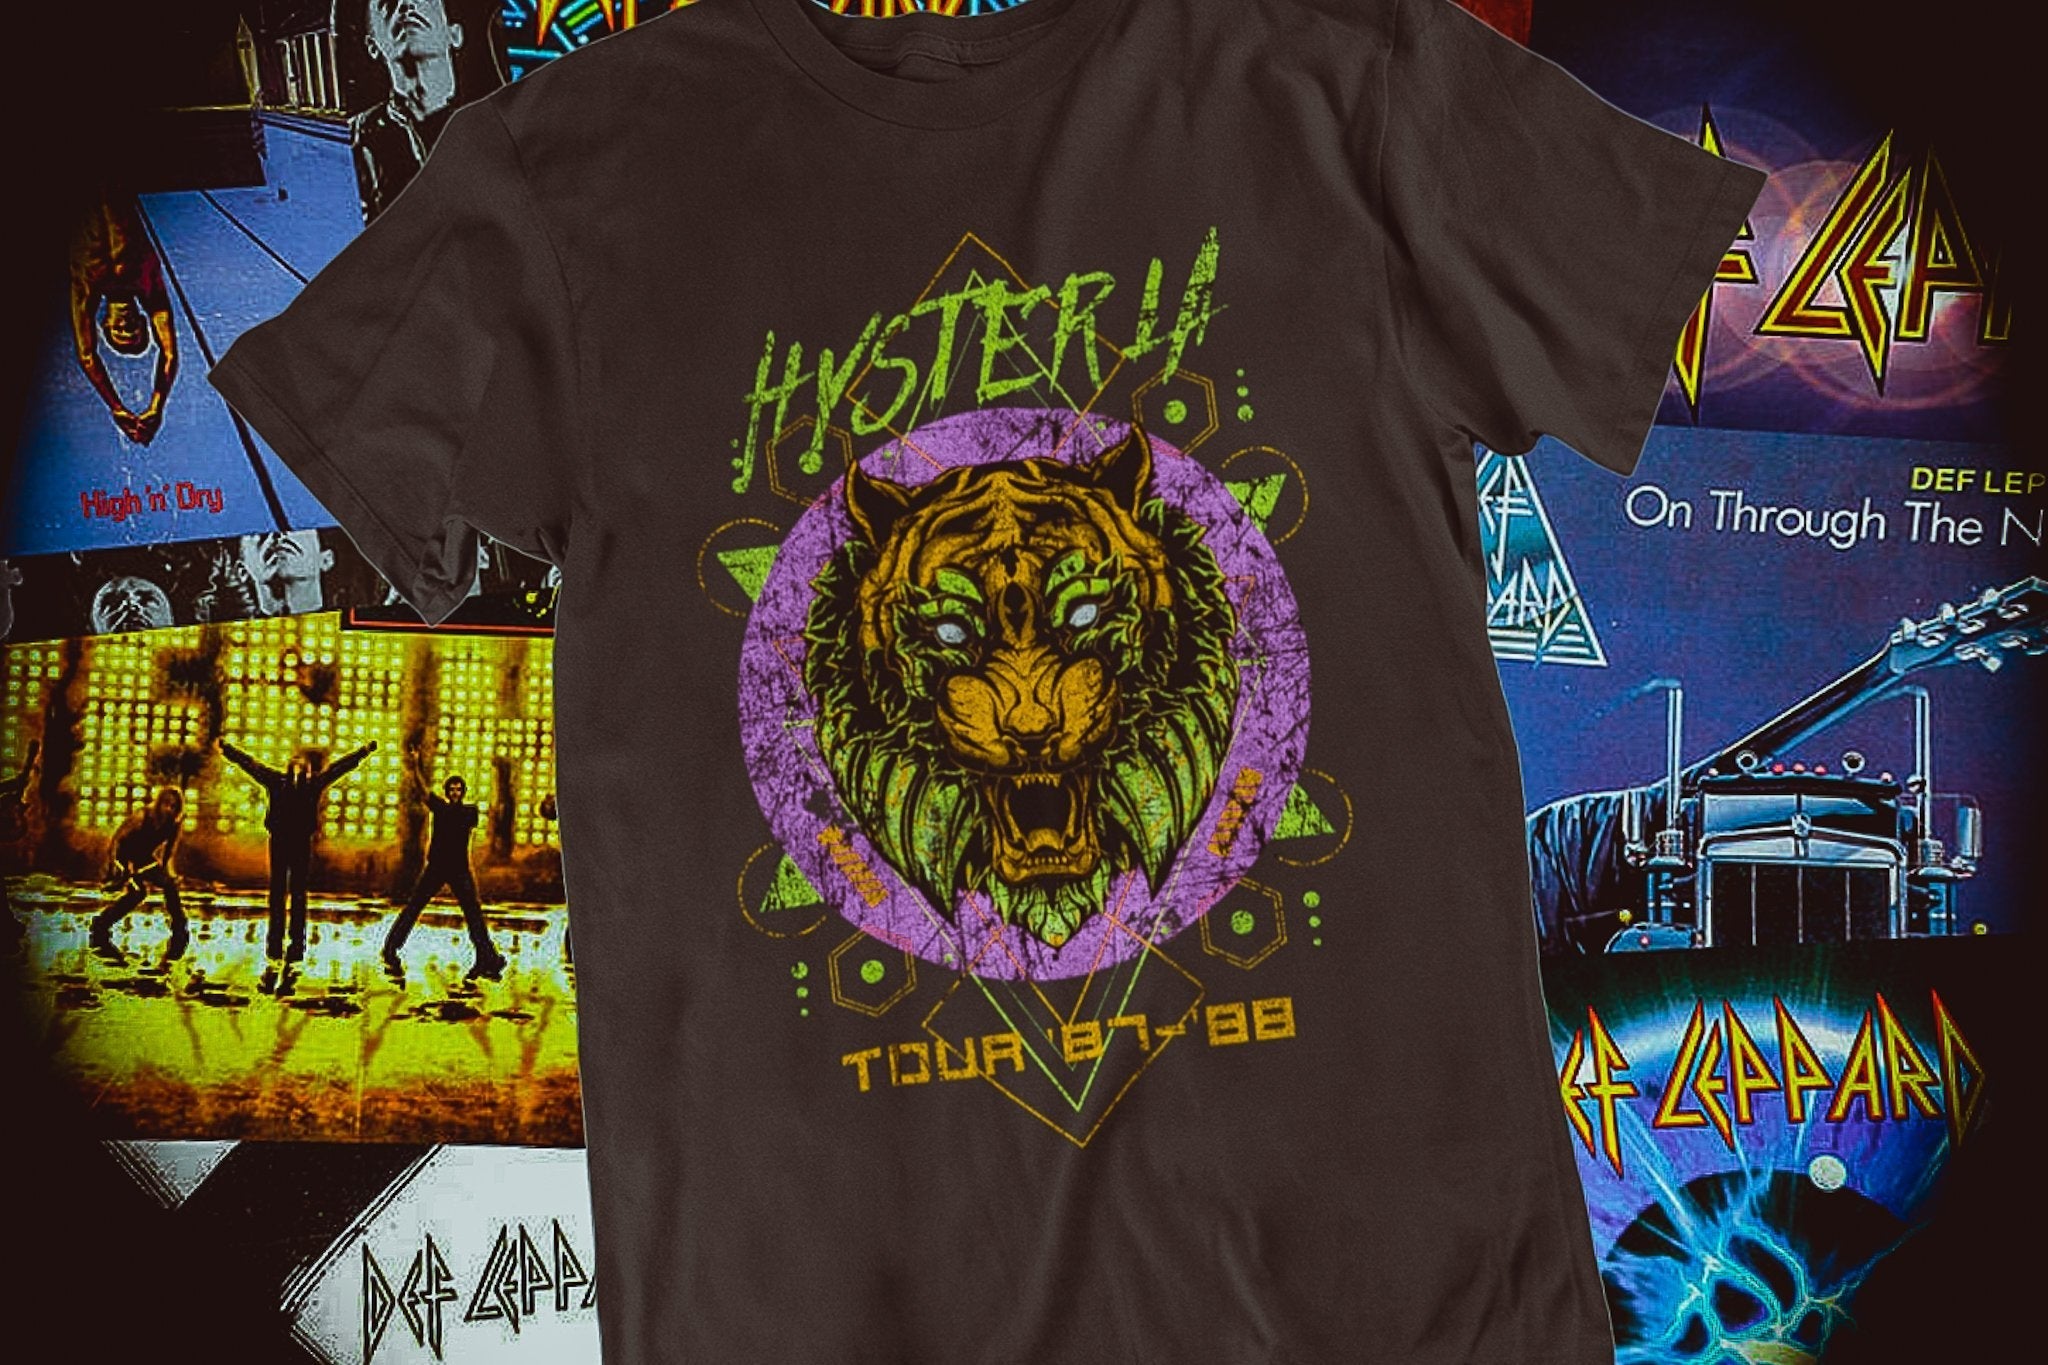 Hysteria Tour Tee